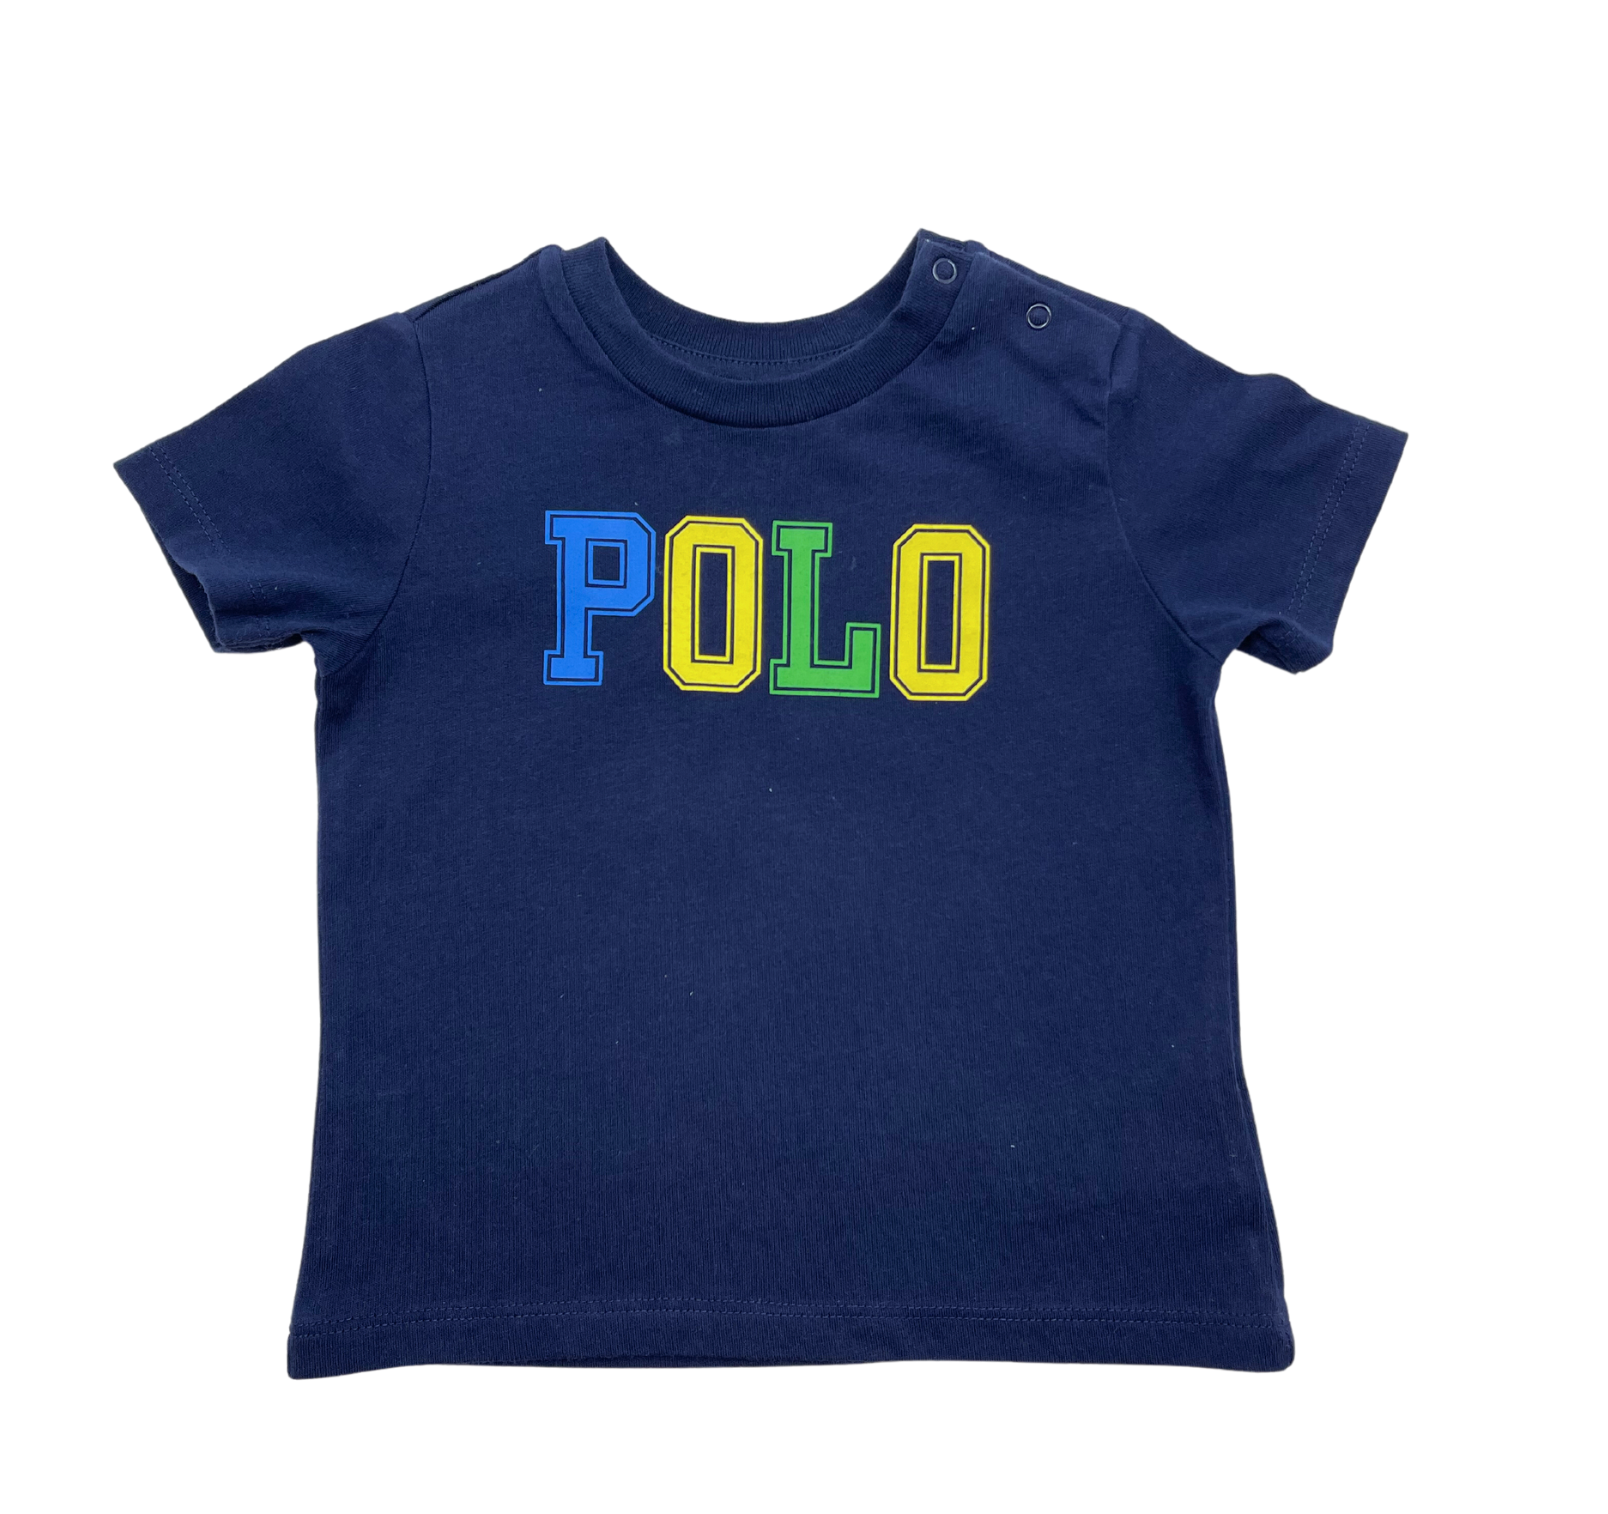 RALPH LAUREN - Polo T-shirt - 12 months